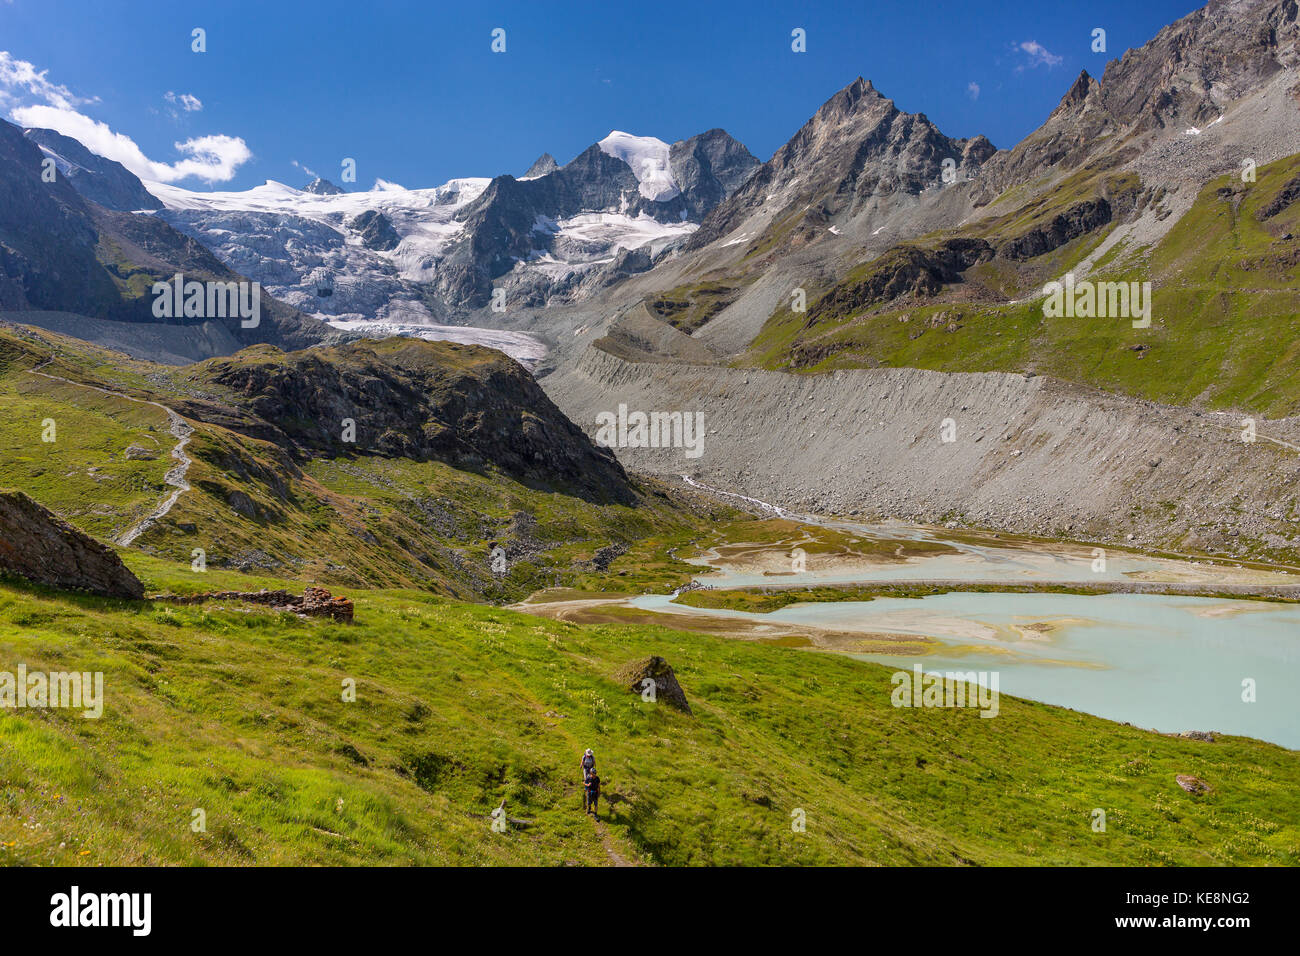 Valle di moiry, Svizzera - ghiacciaio di Moiry paesaggio di montagna, nelle alpi Pennine nel canton Vallese. Foto Stock